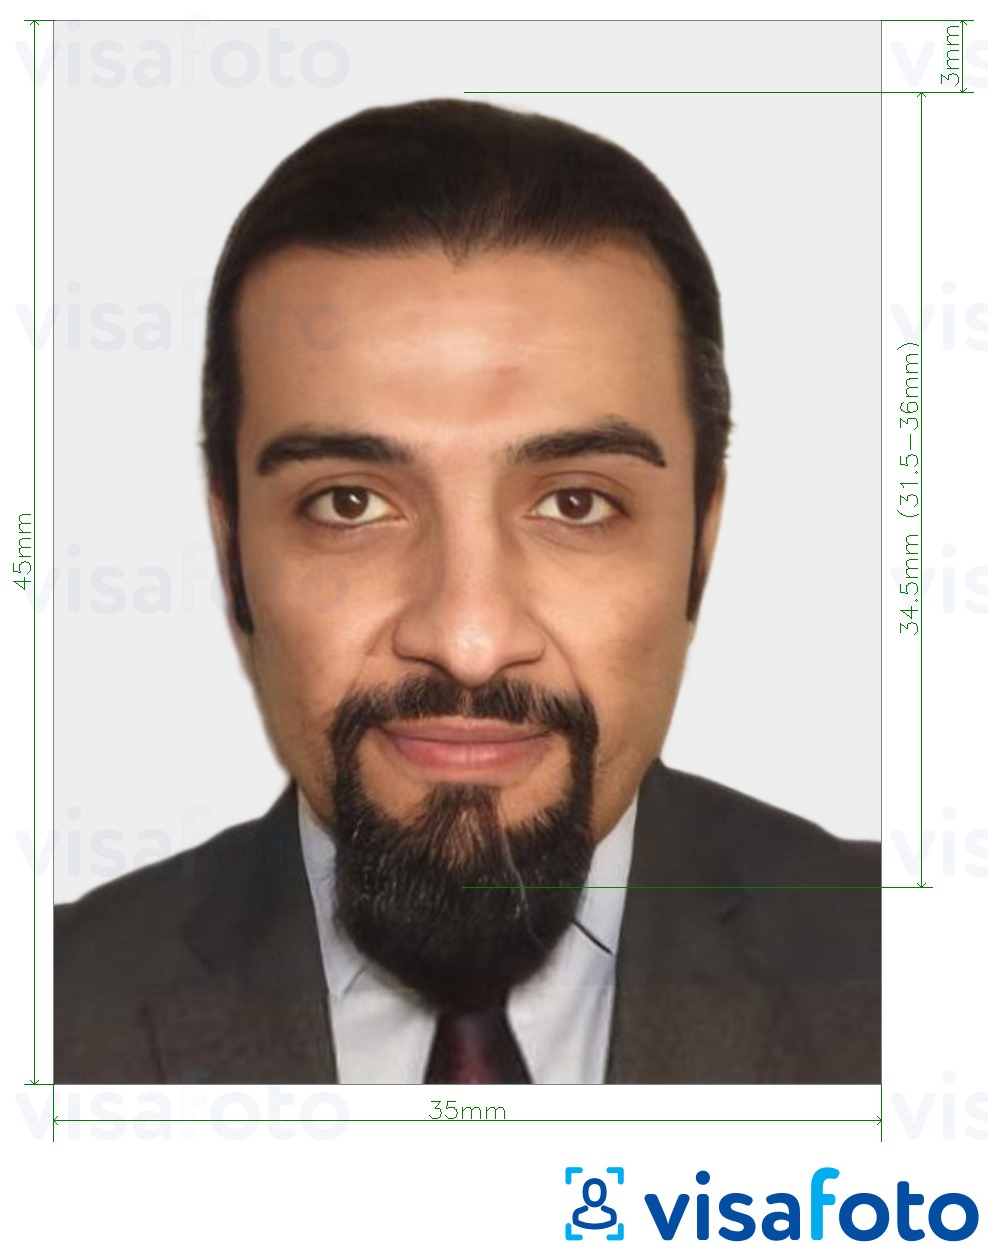 Contoh foto untuk Visa Mauritania 35x45 mm (3.5x4.5 cm) dengan spesifikasi saiz yang tepat.